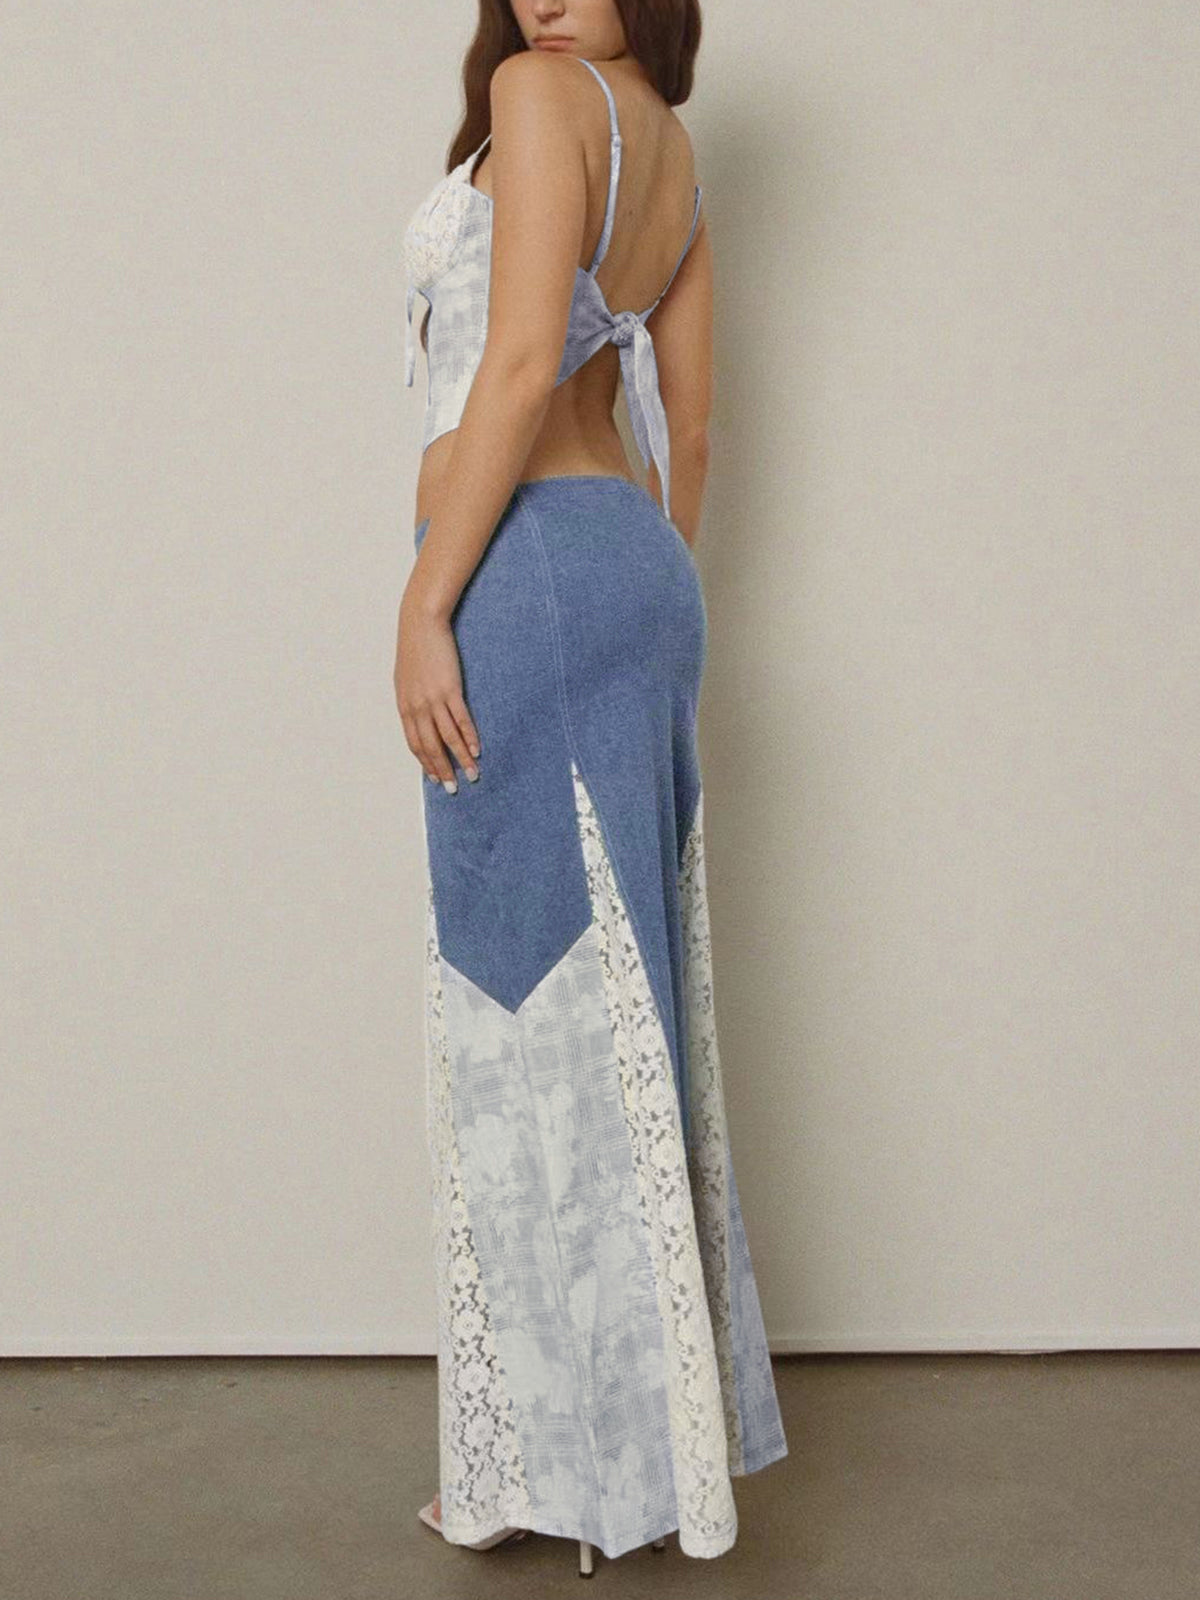 Patchwork Denim Floral Lace Two Piece Skirt Set